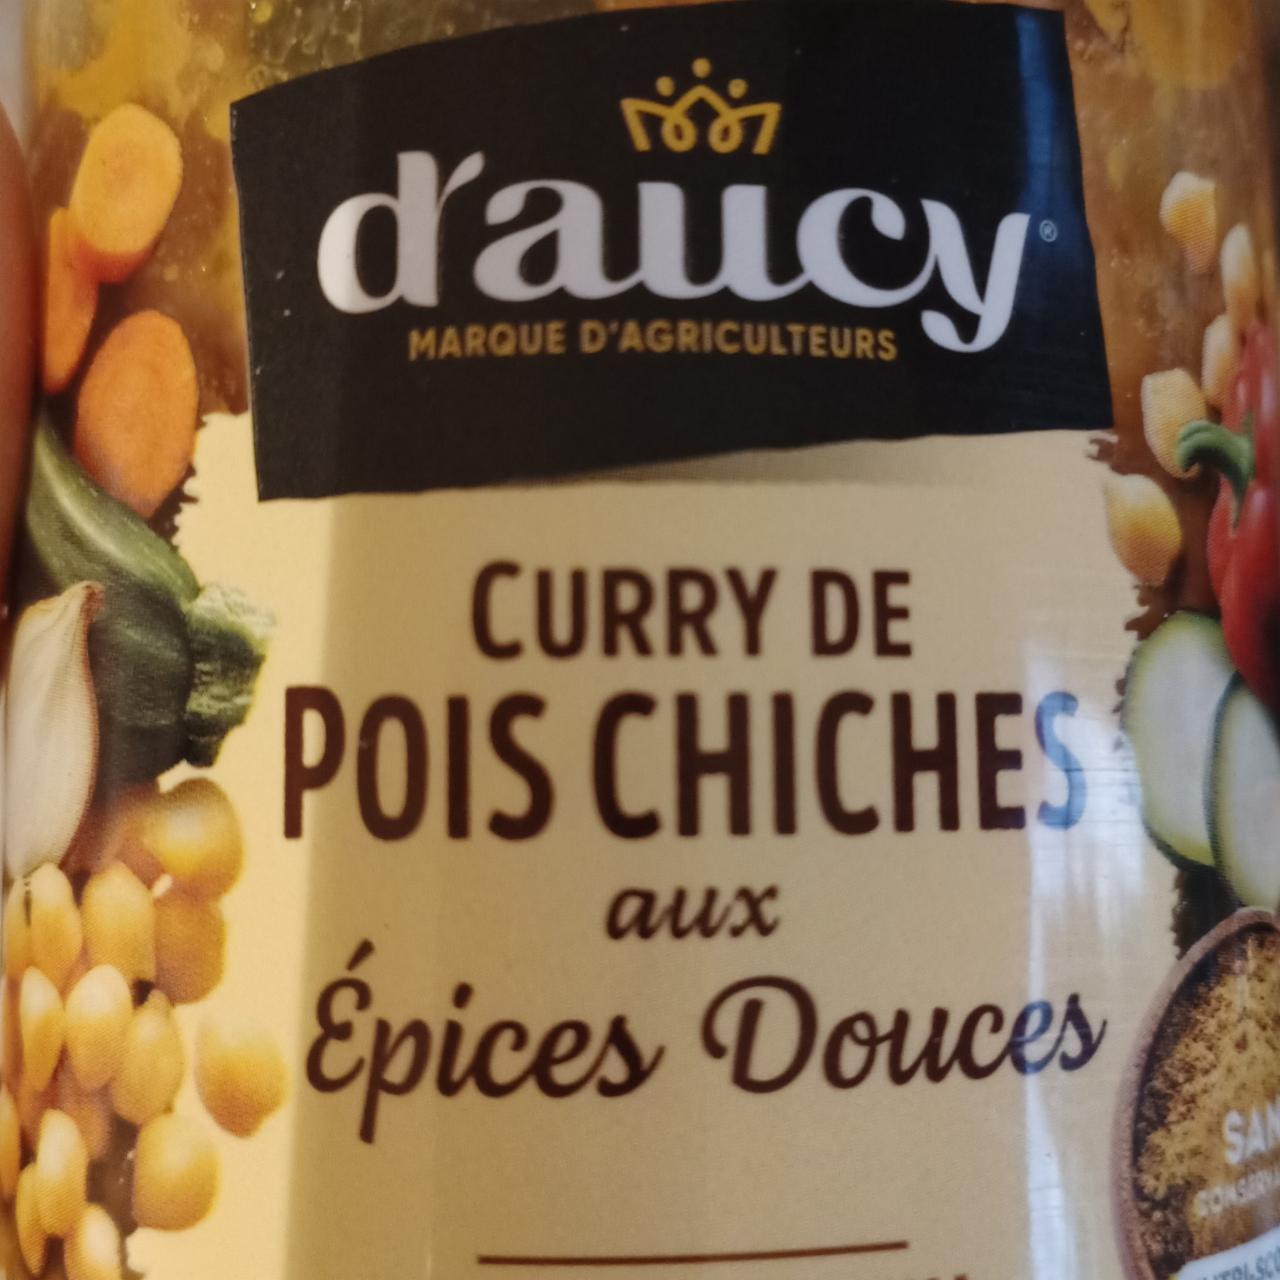 Fotografie - curry de pois chiches D'aucy